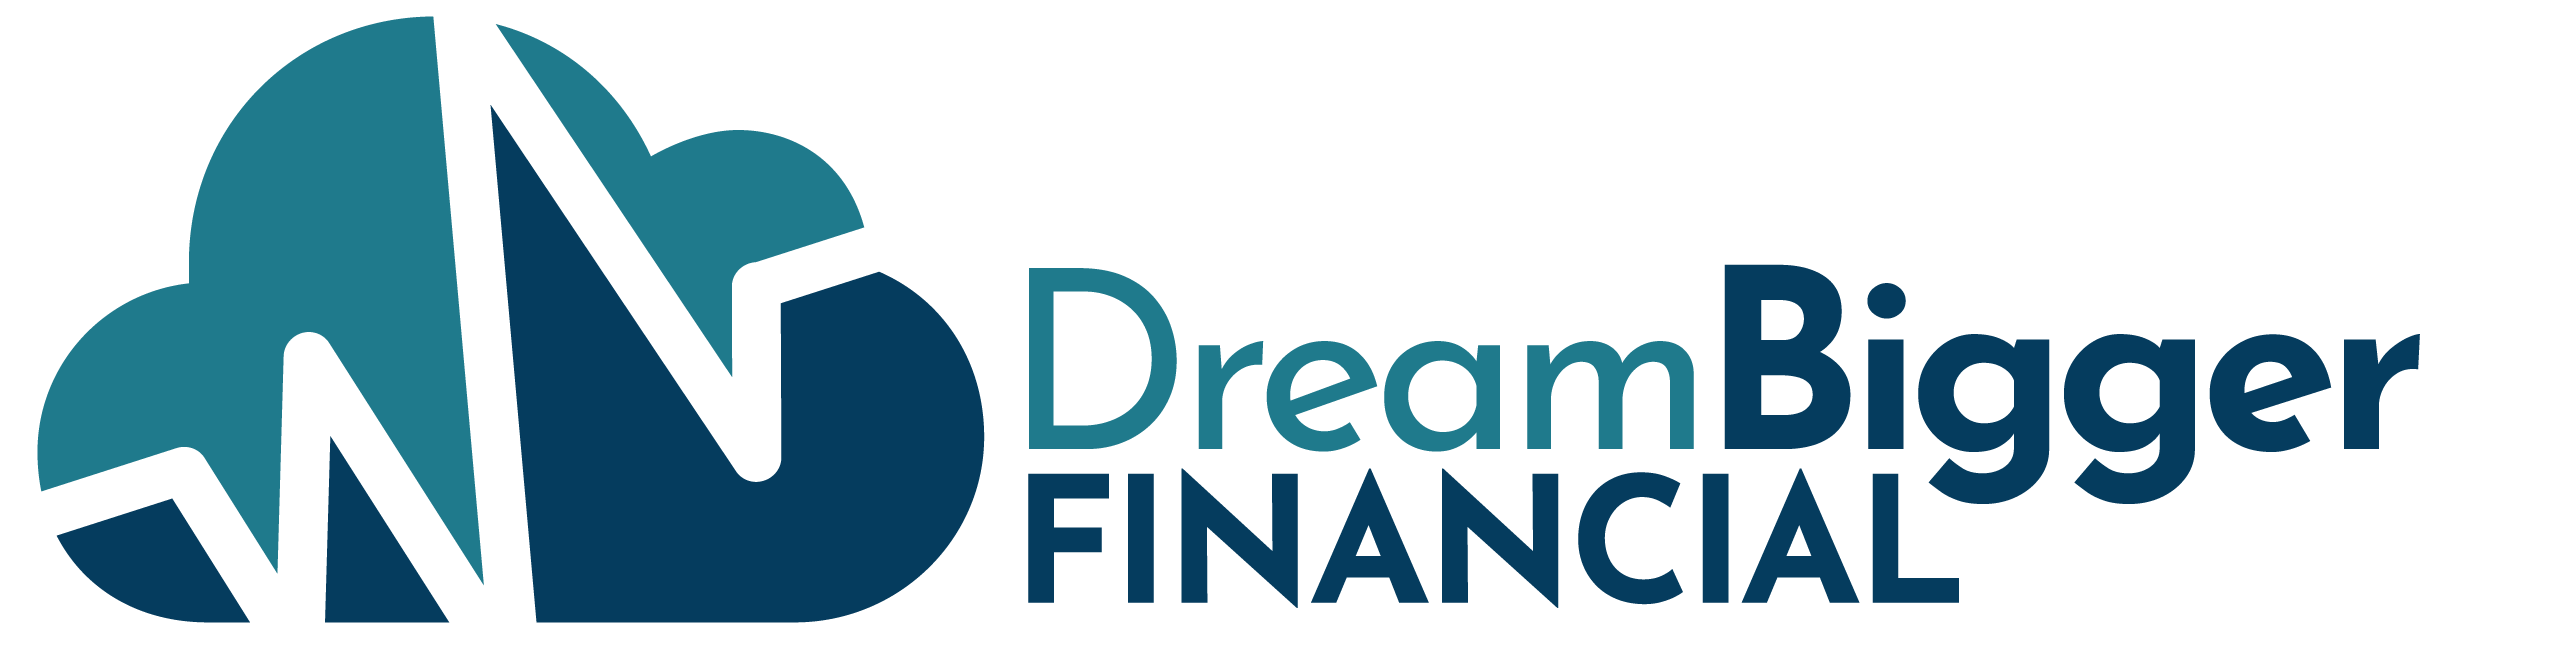 Dream Bigger Financial